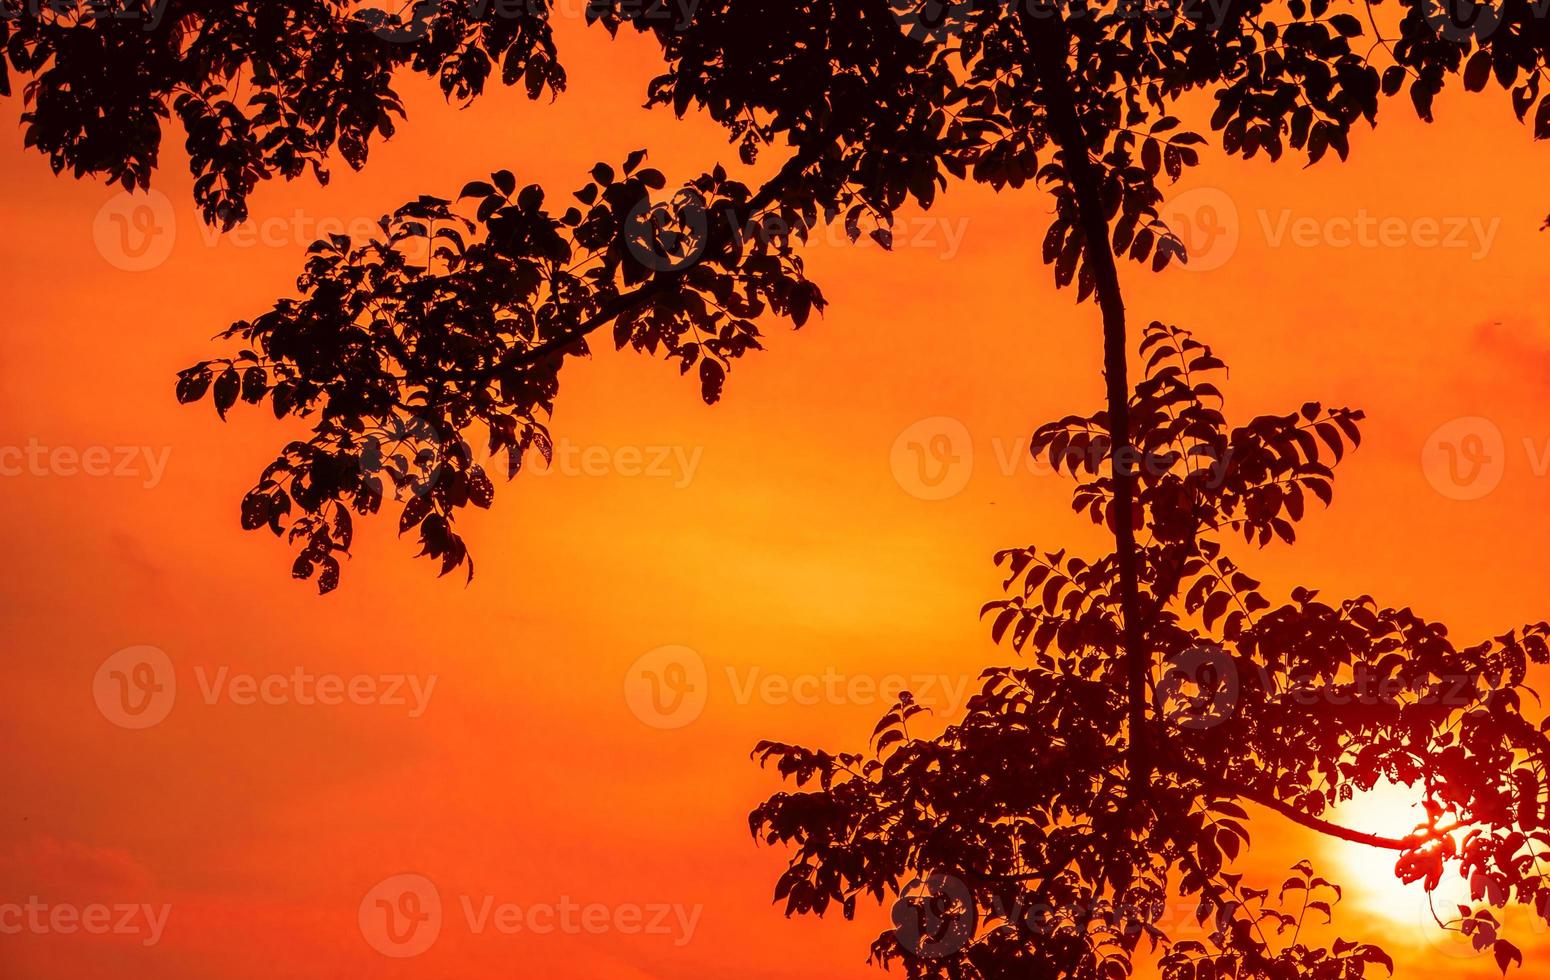 träd grenar siluett bakgrund med orange solnedgång himmel foto